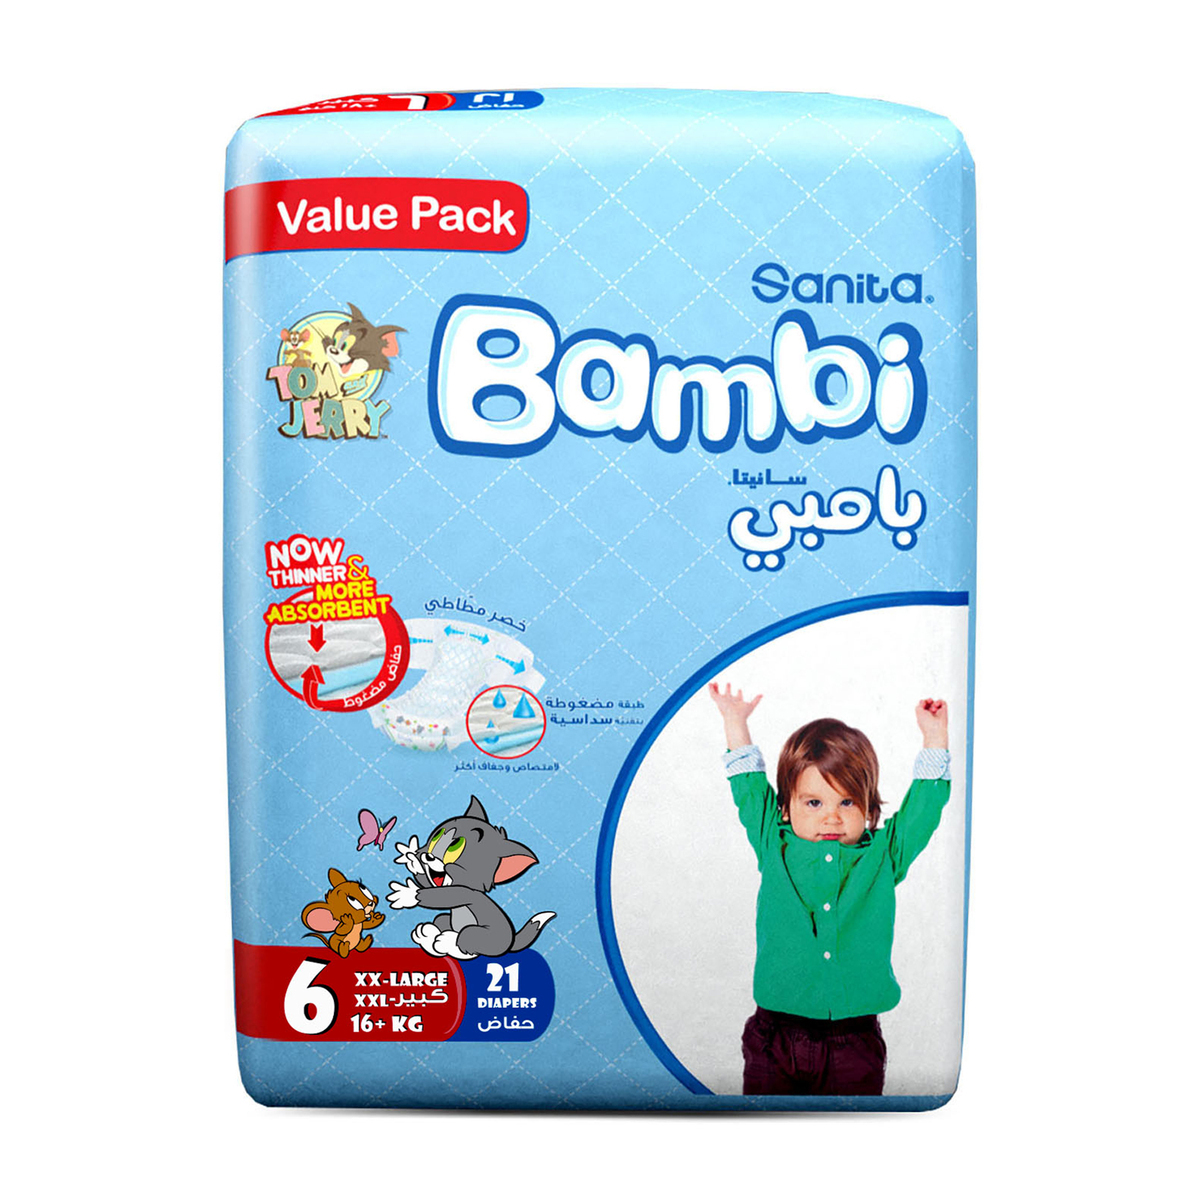 Sanita Bambi Baby Diaper Size 6 Extra Large 16+kg 21pcs